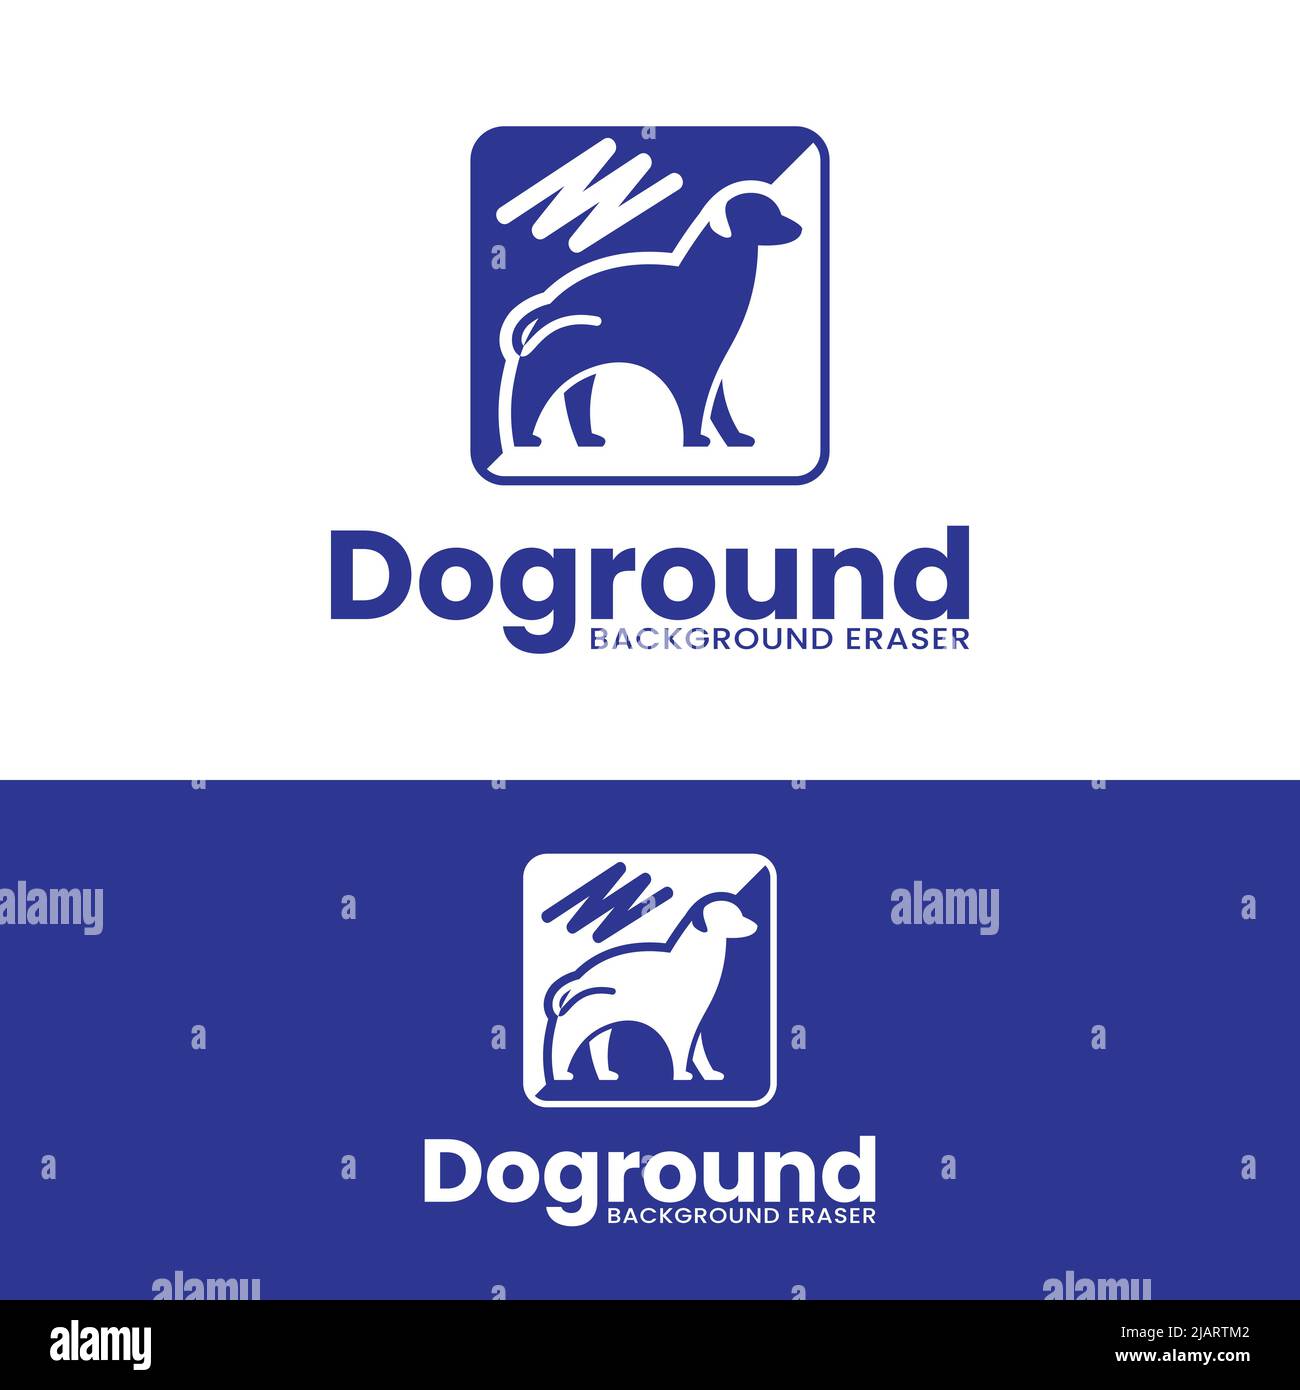 Modello di disegno del logo di rimozione dello sfondo di animale del cane. Adatto per rimuovere sfondo Eraser applicazione sito web Brand Business Company in semplice Illustrazione Vettoriale